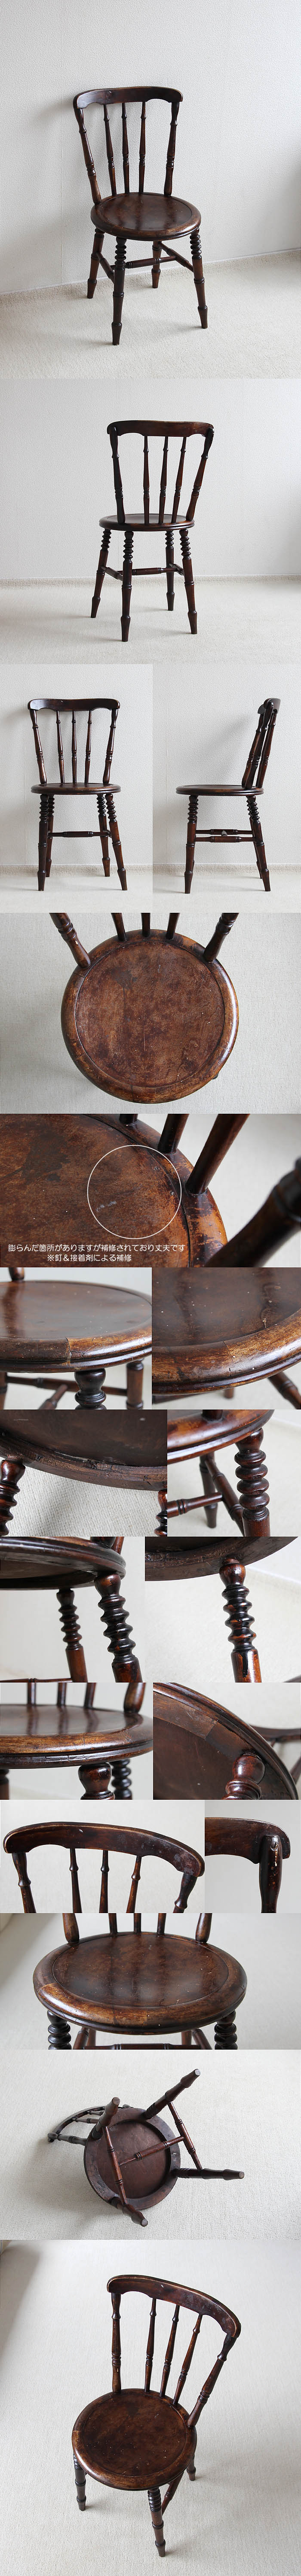 イギリス アンティーク キッチンチェア 木製椅子 店舗什器 ディスプレイ 家具 V-193